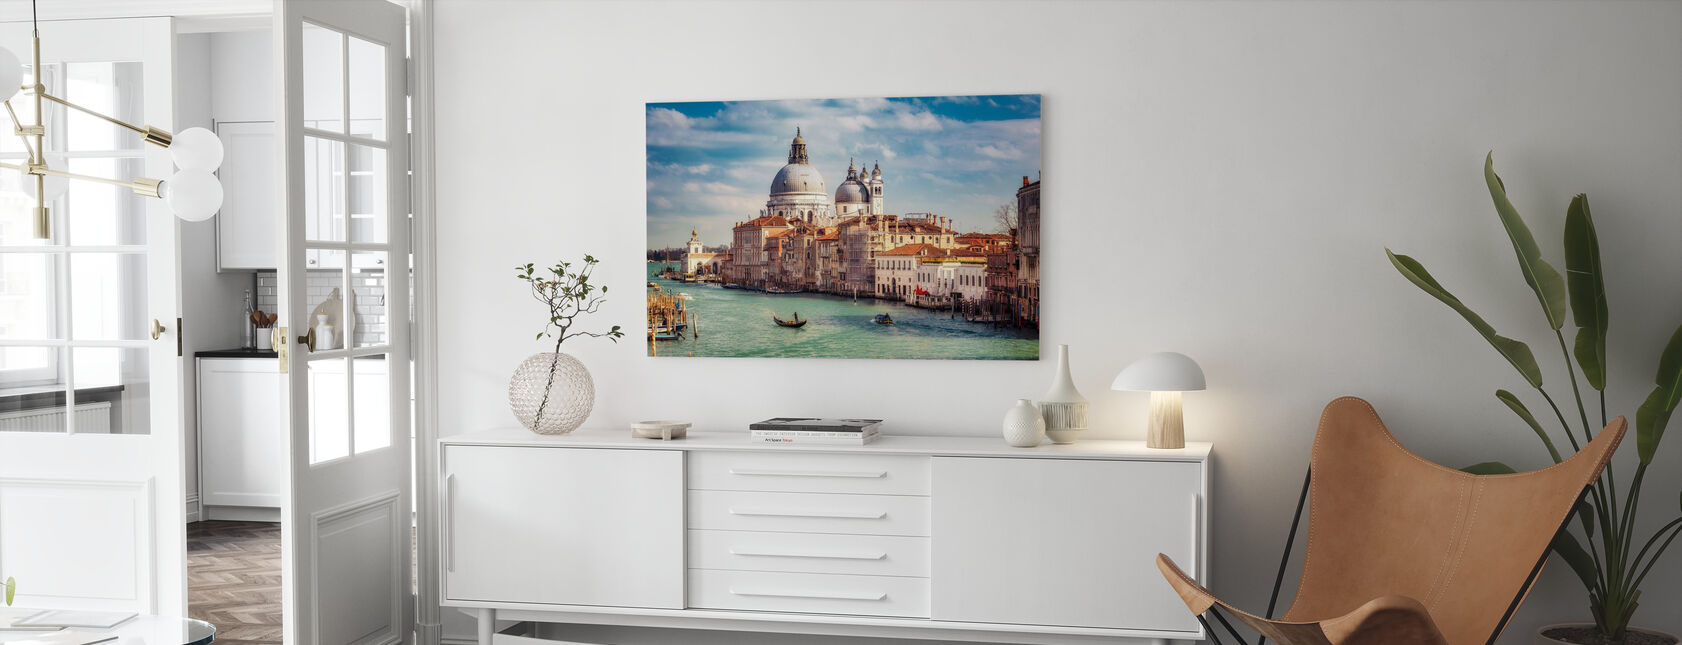 Basilica Santa Maria della Salute in Venice - Canvas print - Living Room